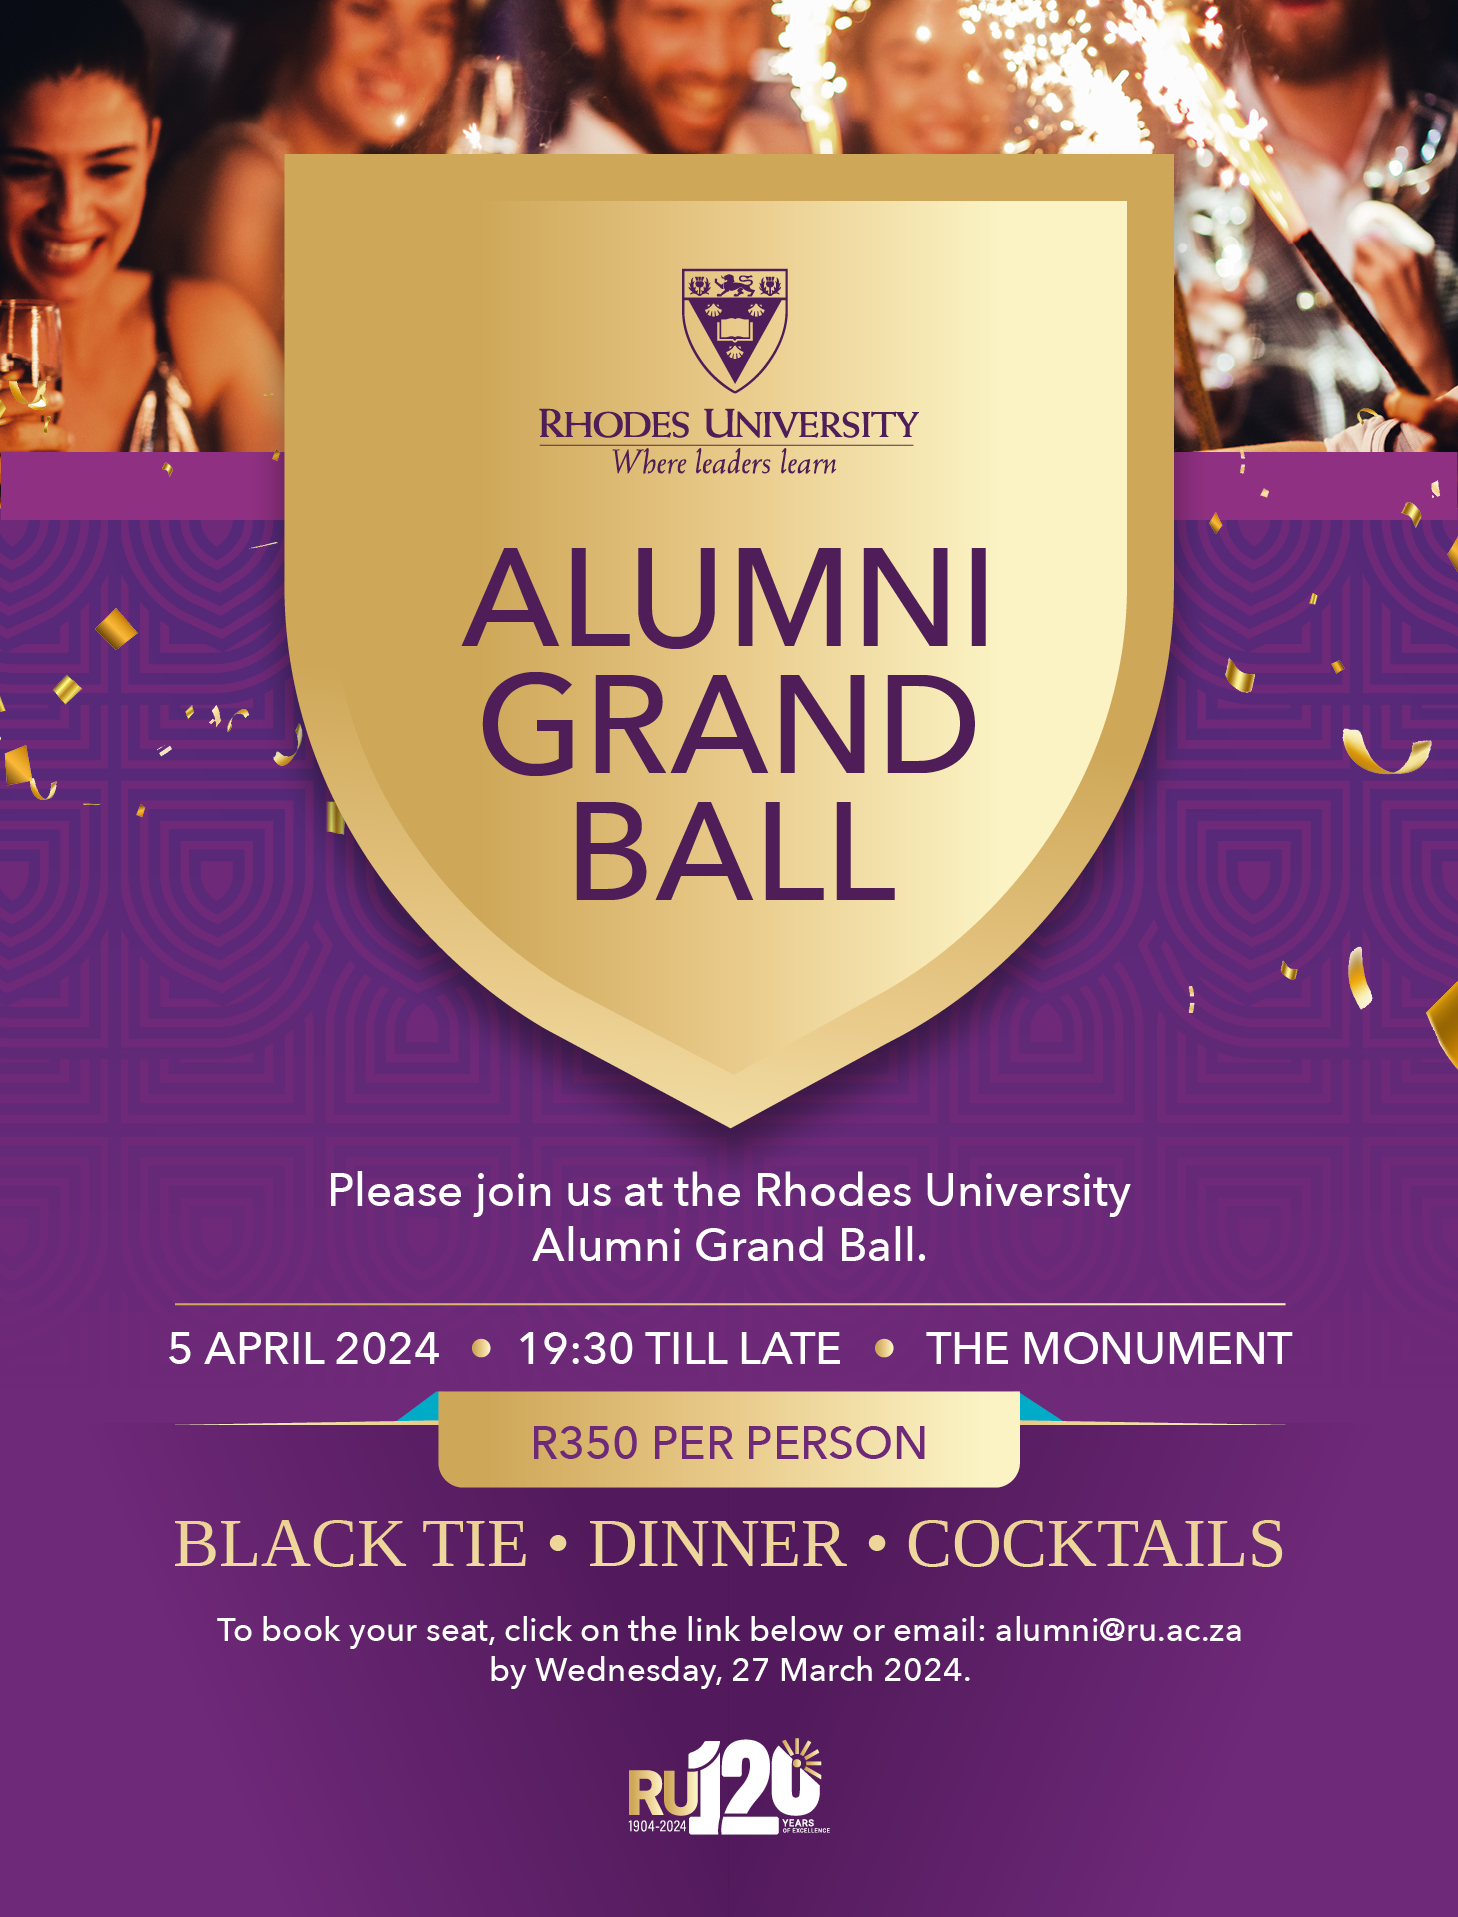 Alumni Grand Ball Invitation